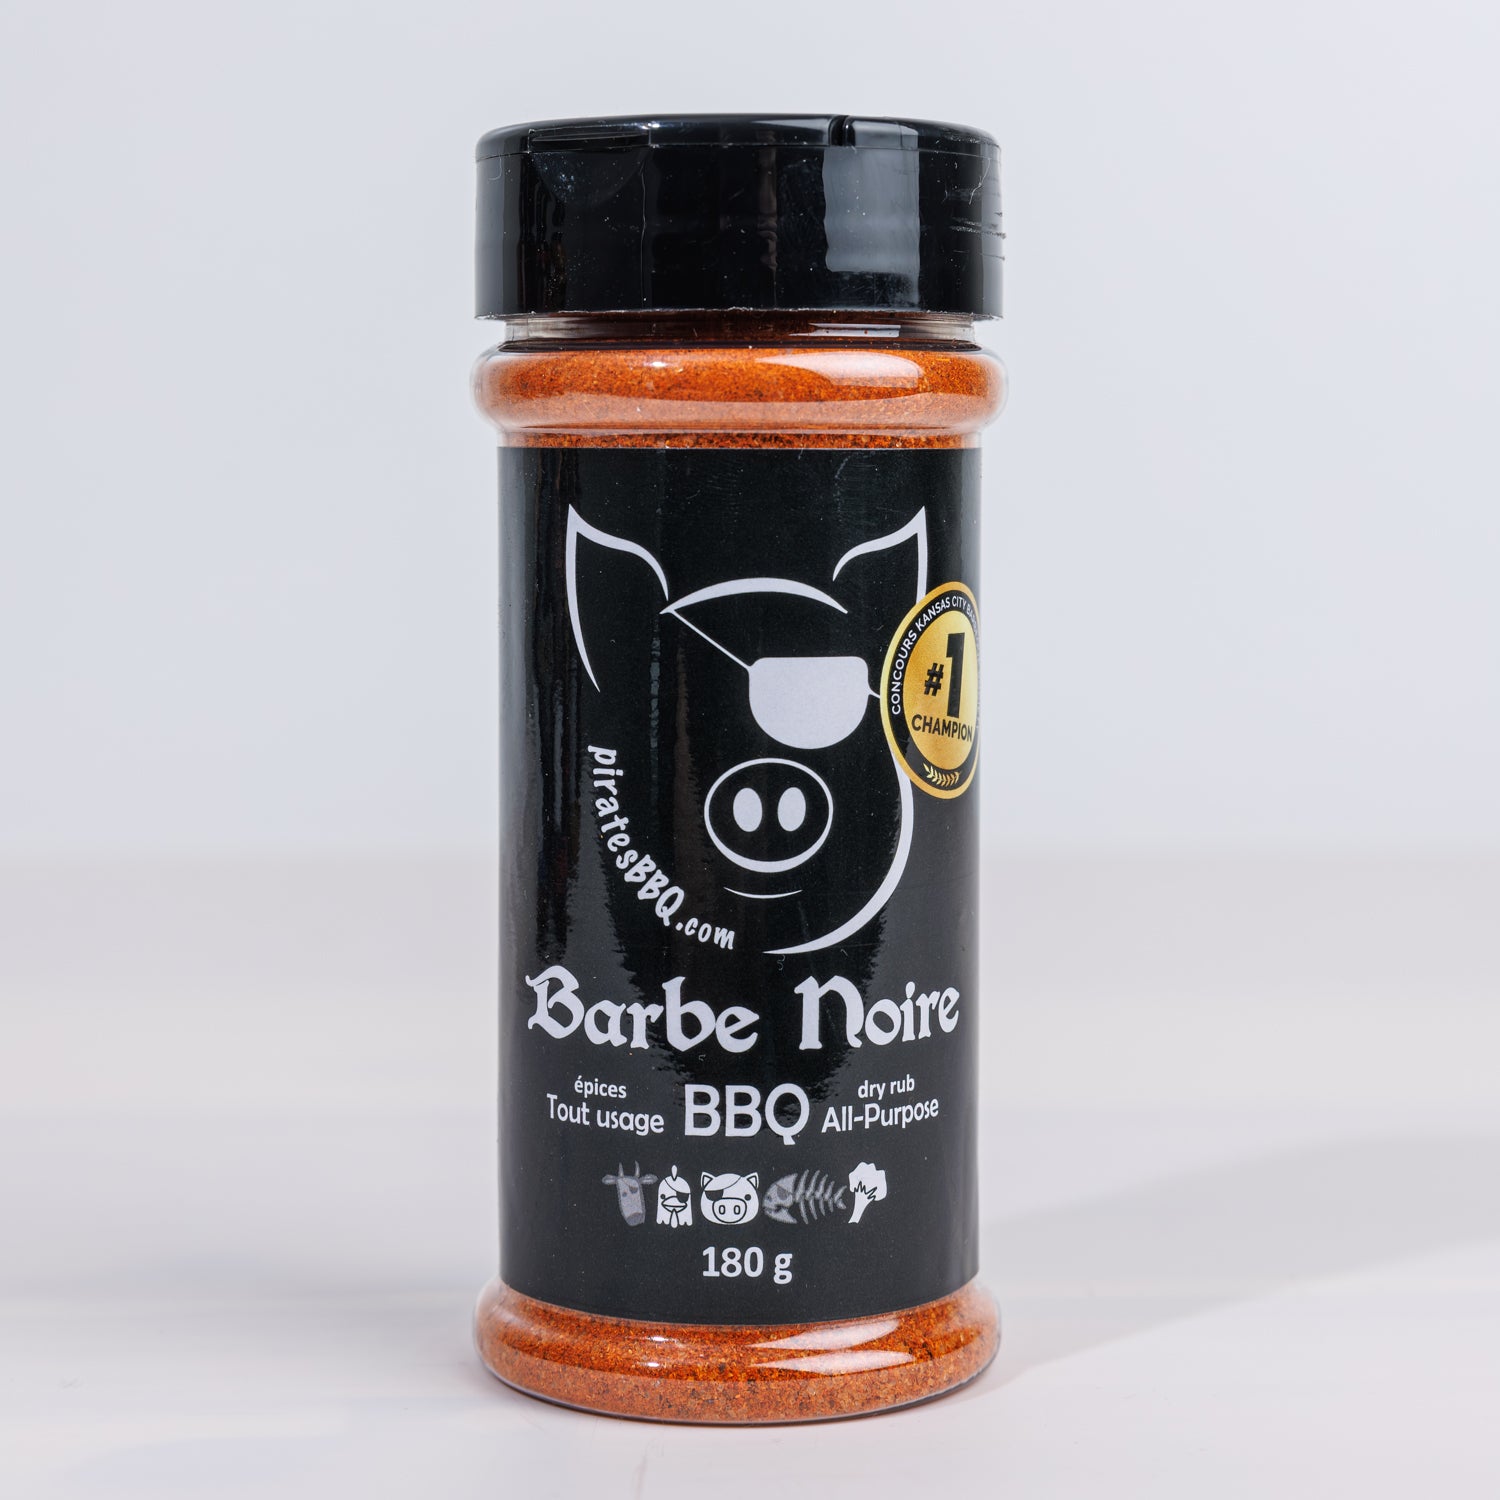 Barbe Noire - Épices BBQ tout usage - PatBBQ